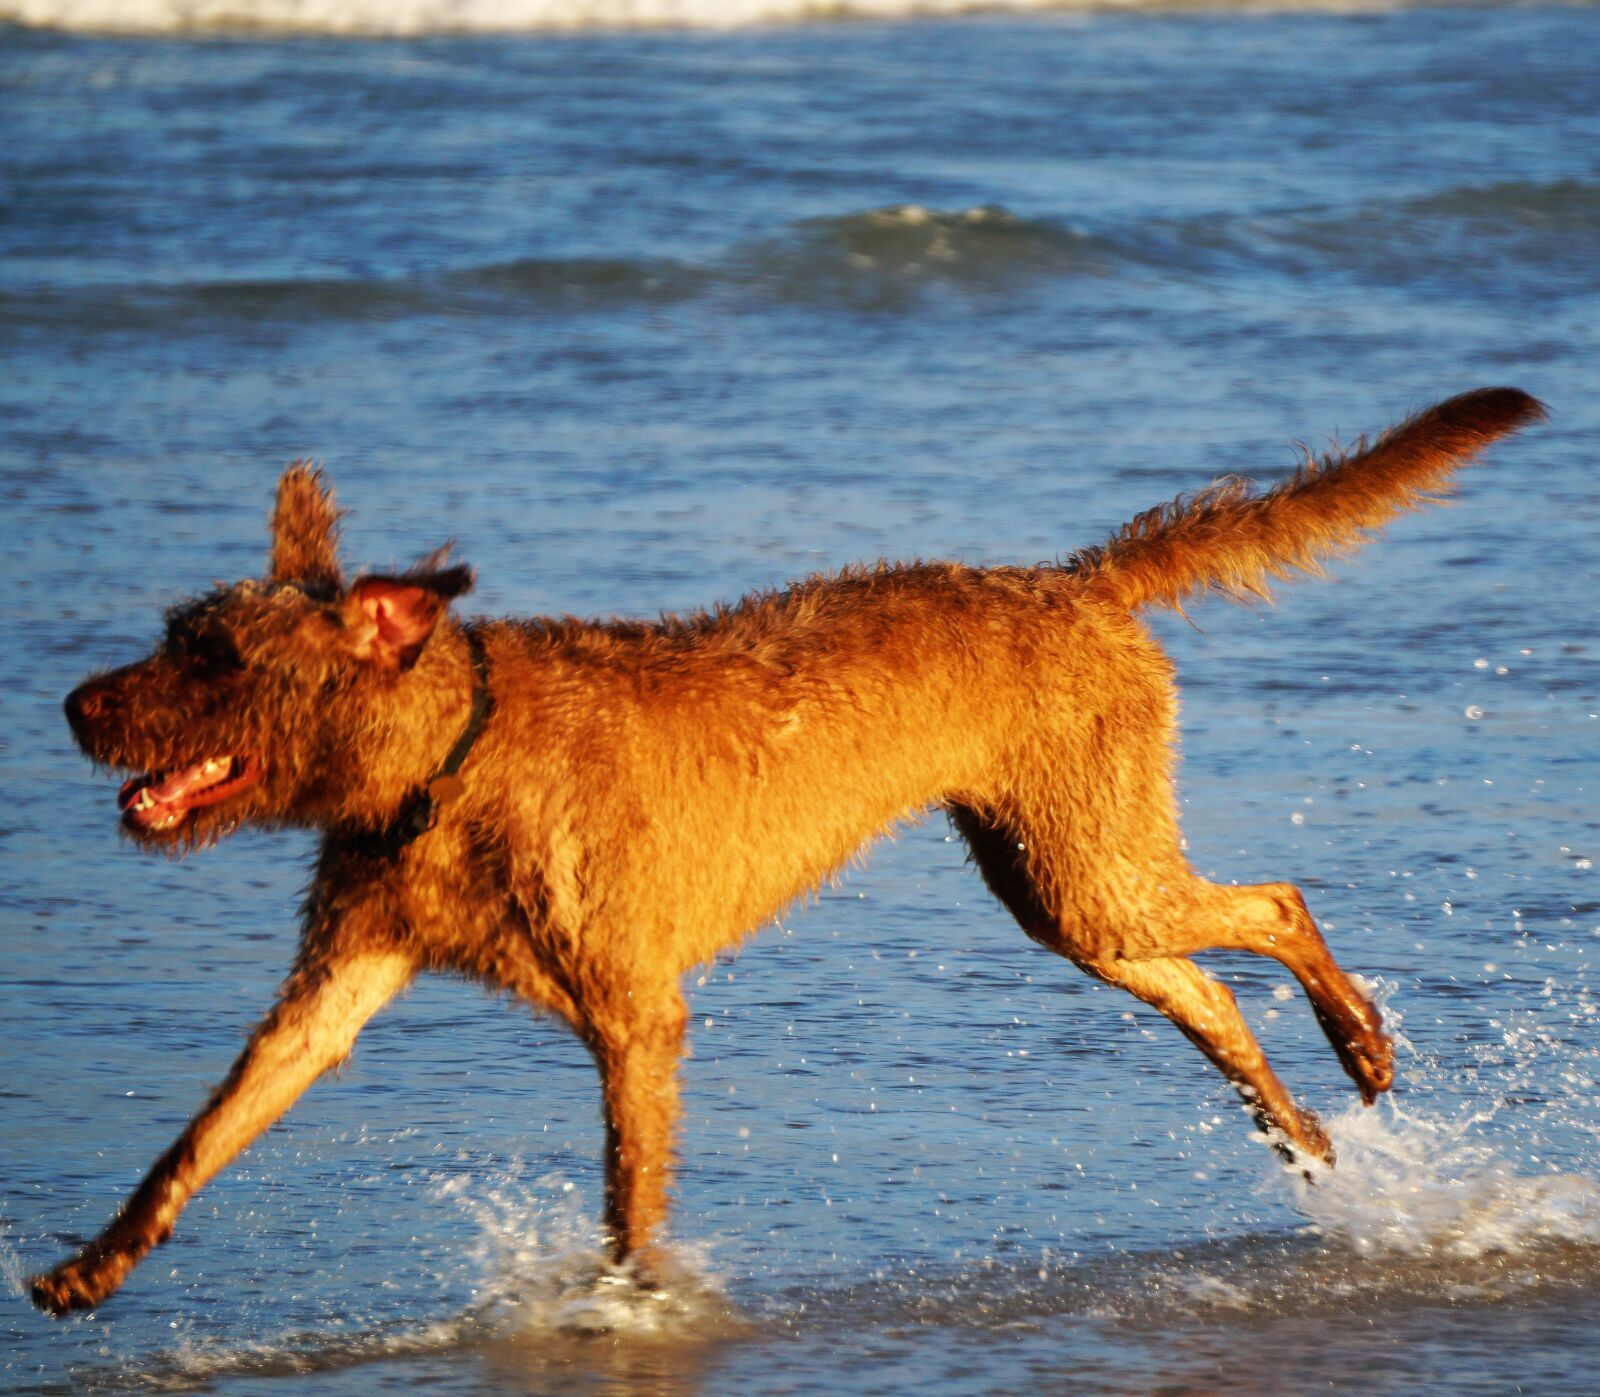 Sony Alpha a3500 sample photo. Dog on beach, dog photography